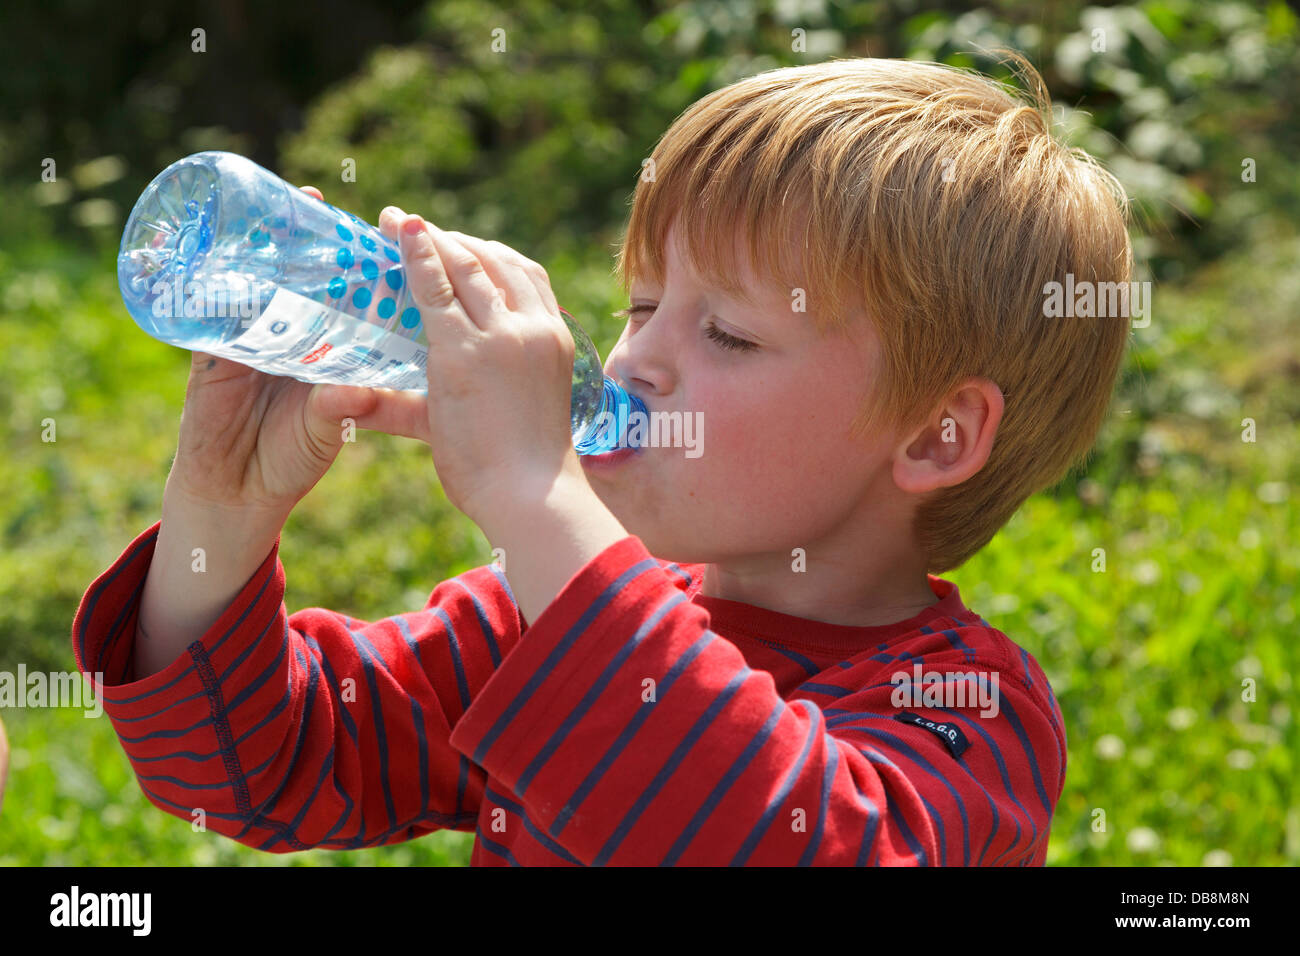 Giovane ragazzo in acqua potabile da una bottiglia Foto Stock